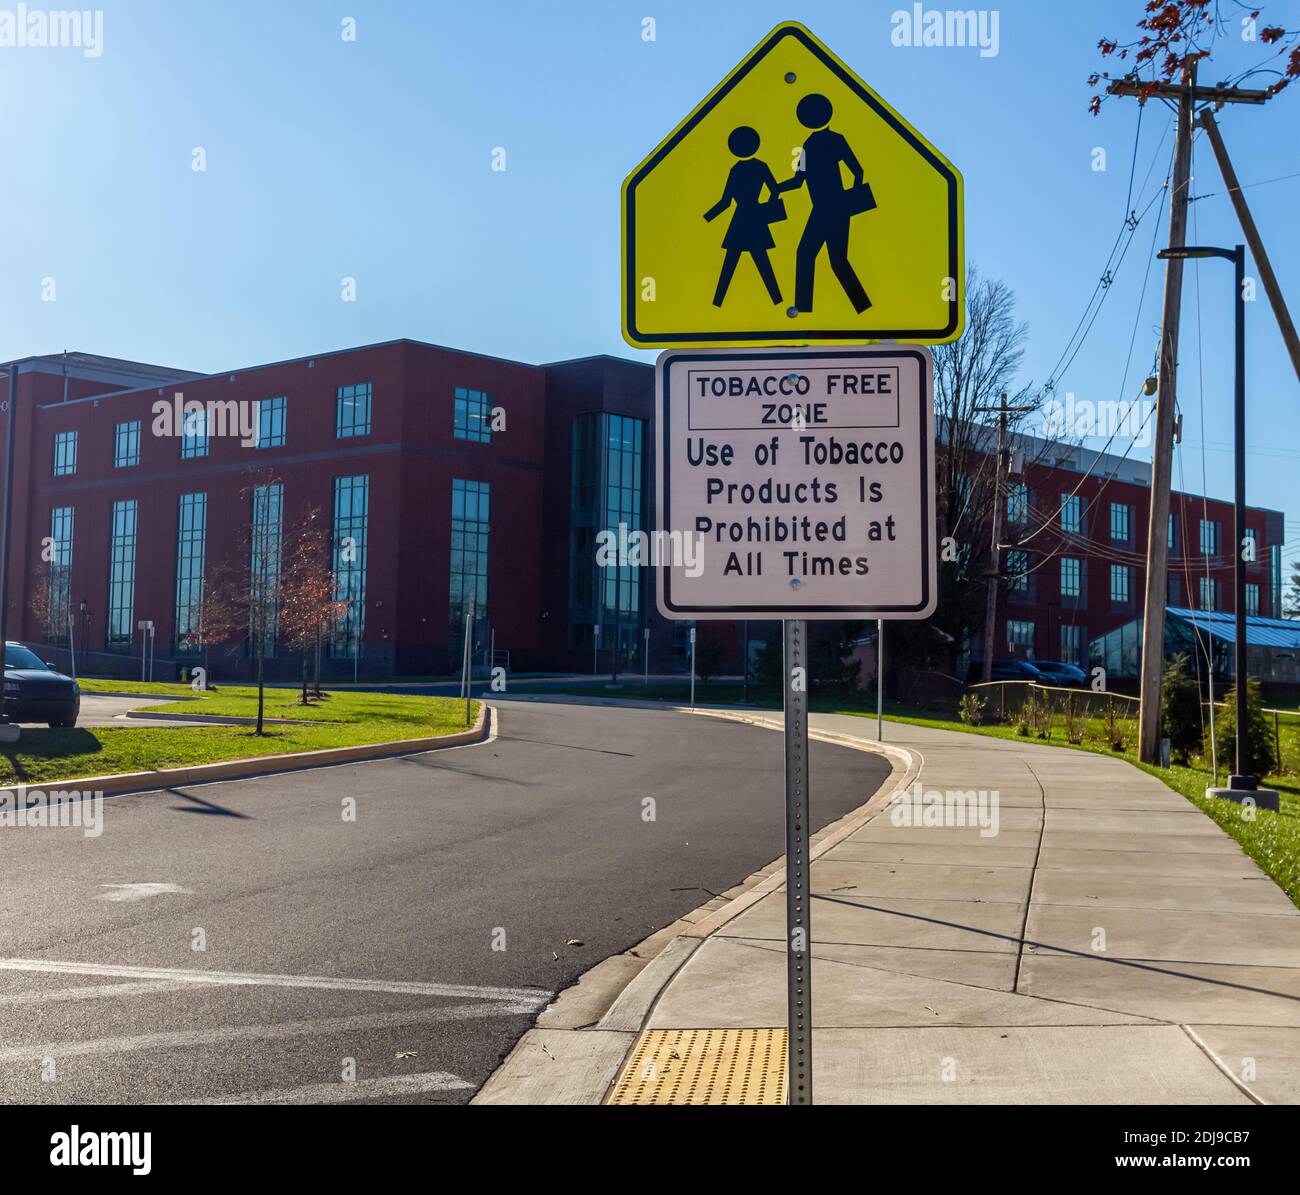 Tabaco Free Zone Schild mit Schülerkreuzung Schild vor einer öffentlichen High School in Maryland. Tabakerzeugnisse sind in den Räumlichkeiten nicht erlaubt, um s zu vermeiden Stockfoto